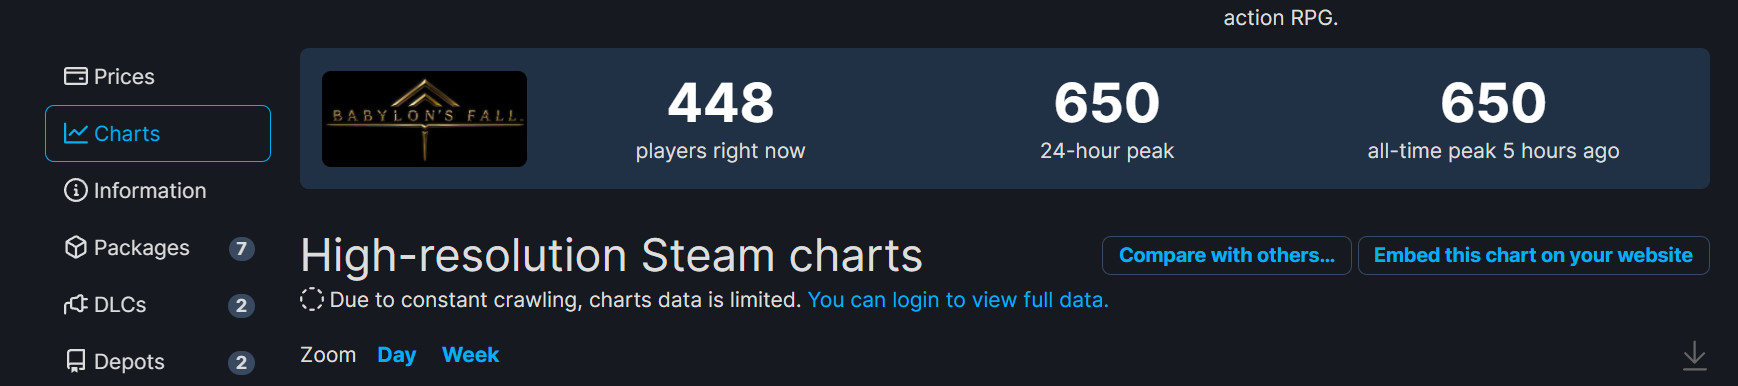 多人砍杀游戏《巴比伦的陨落》Steam首发表现惨淡 最高在线只有650人